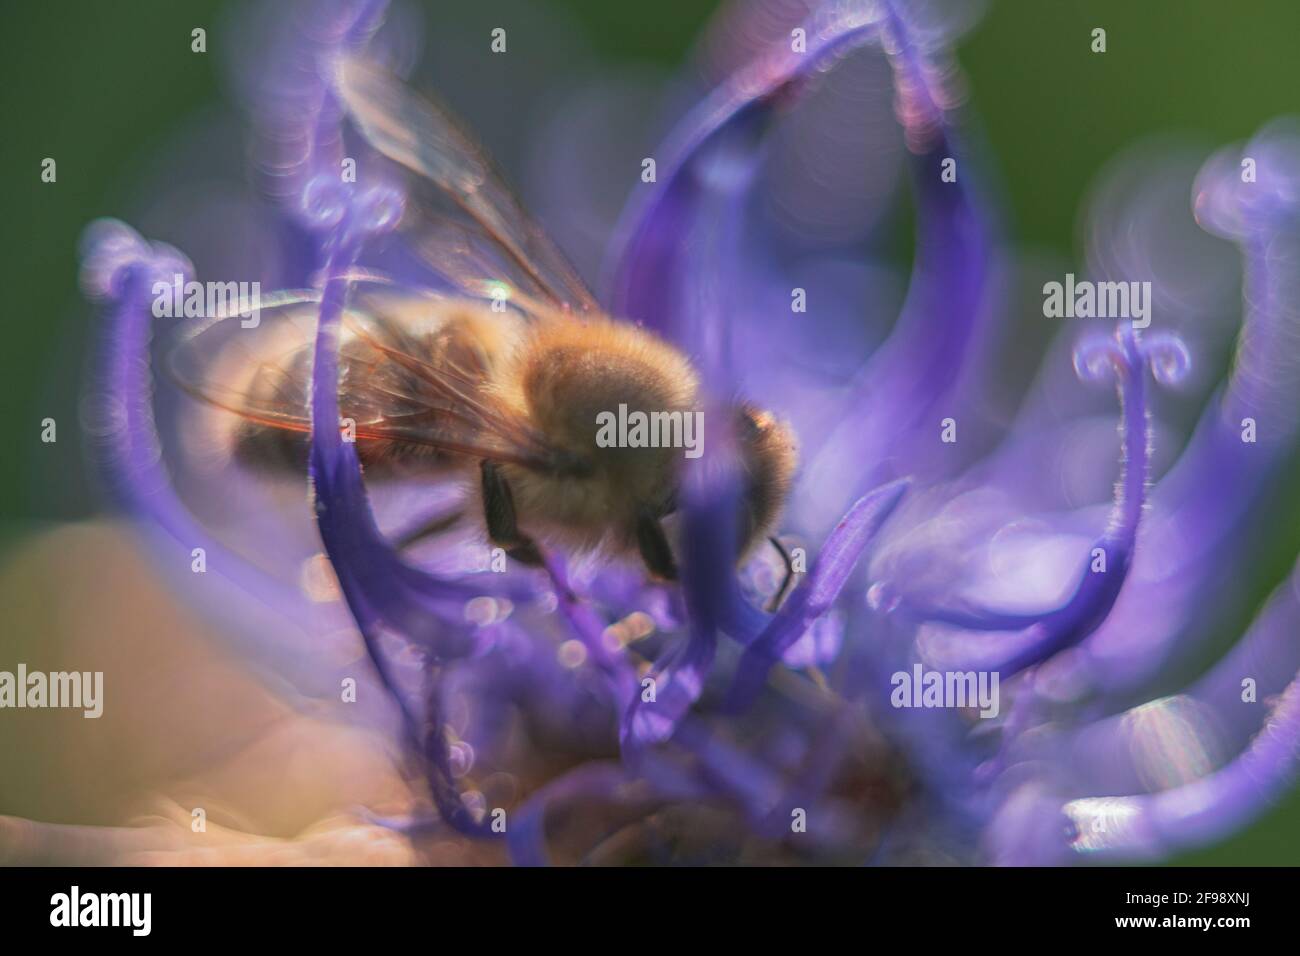 Garra del diablo con abeja, fotografiada con una lente macro vintage Foto de stock